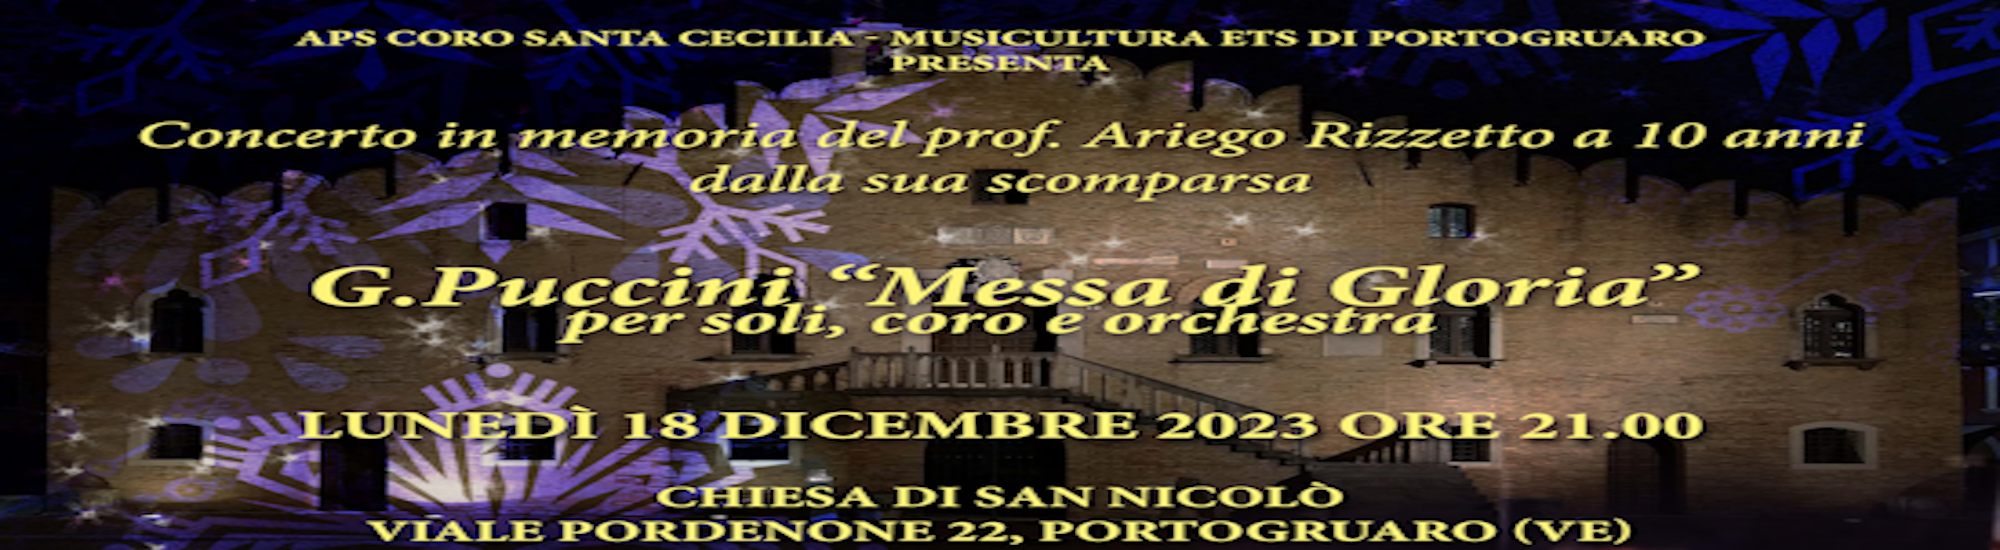 Immagine Concerto in memoria del Prof. Ariego Rizzetto